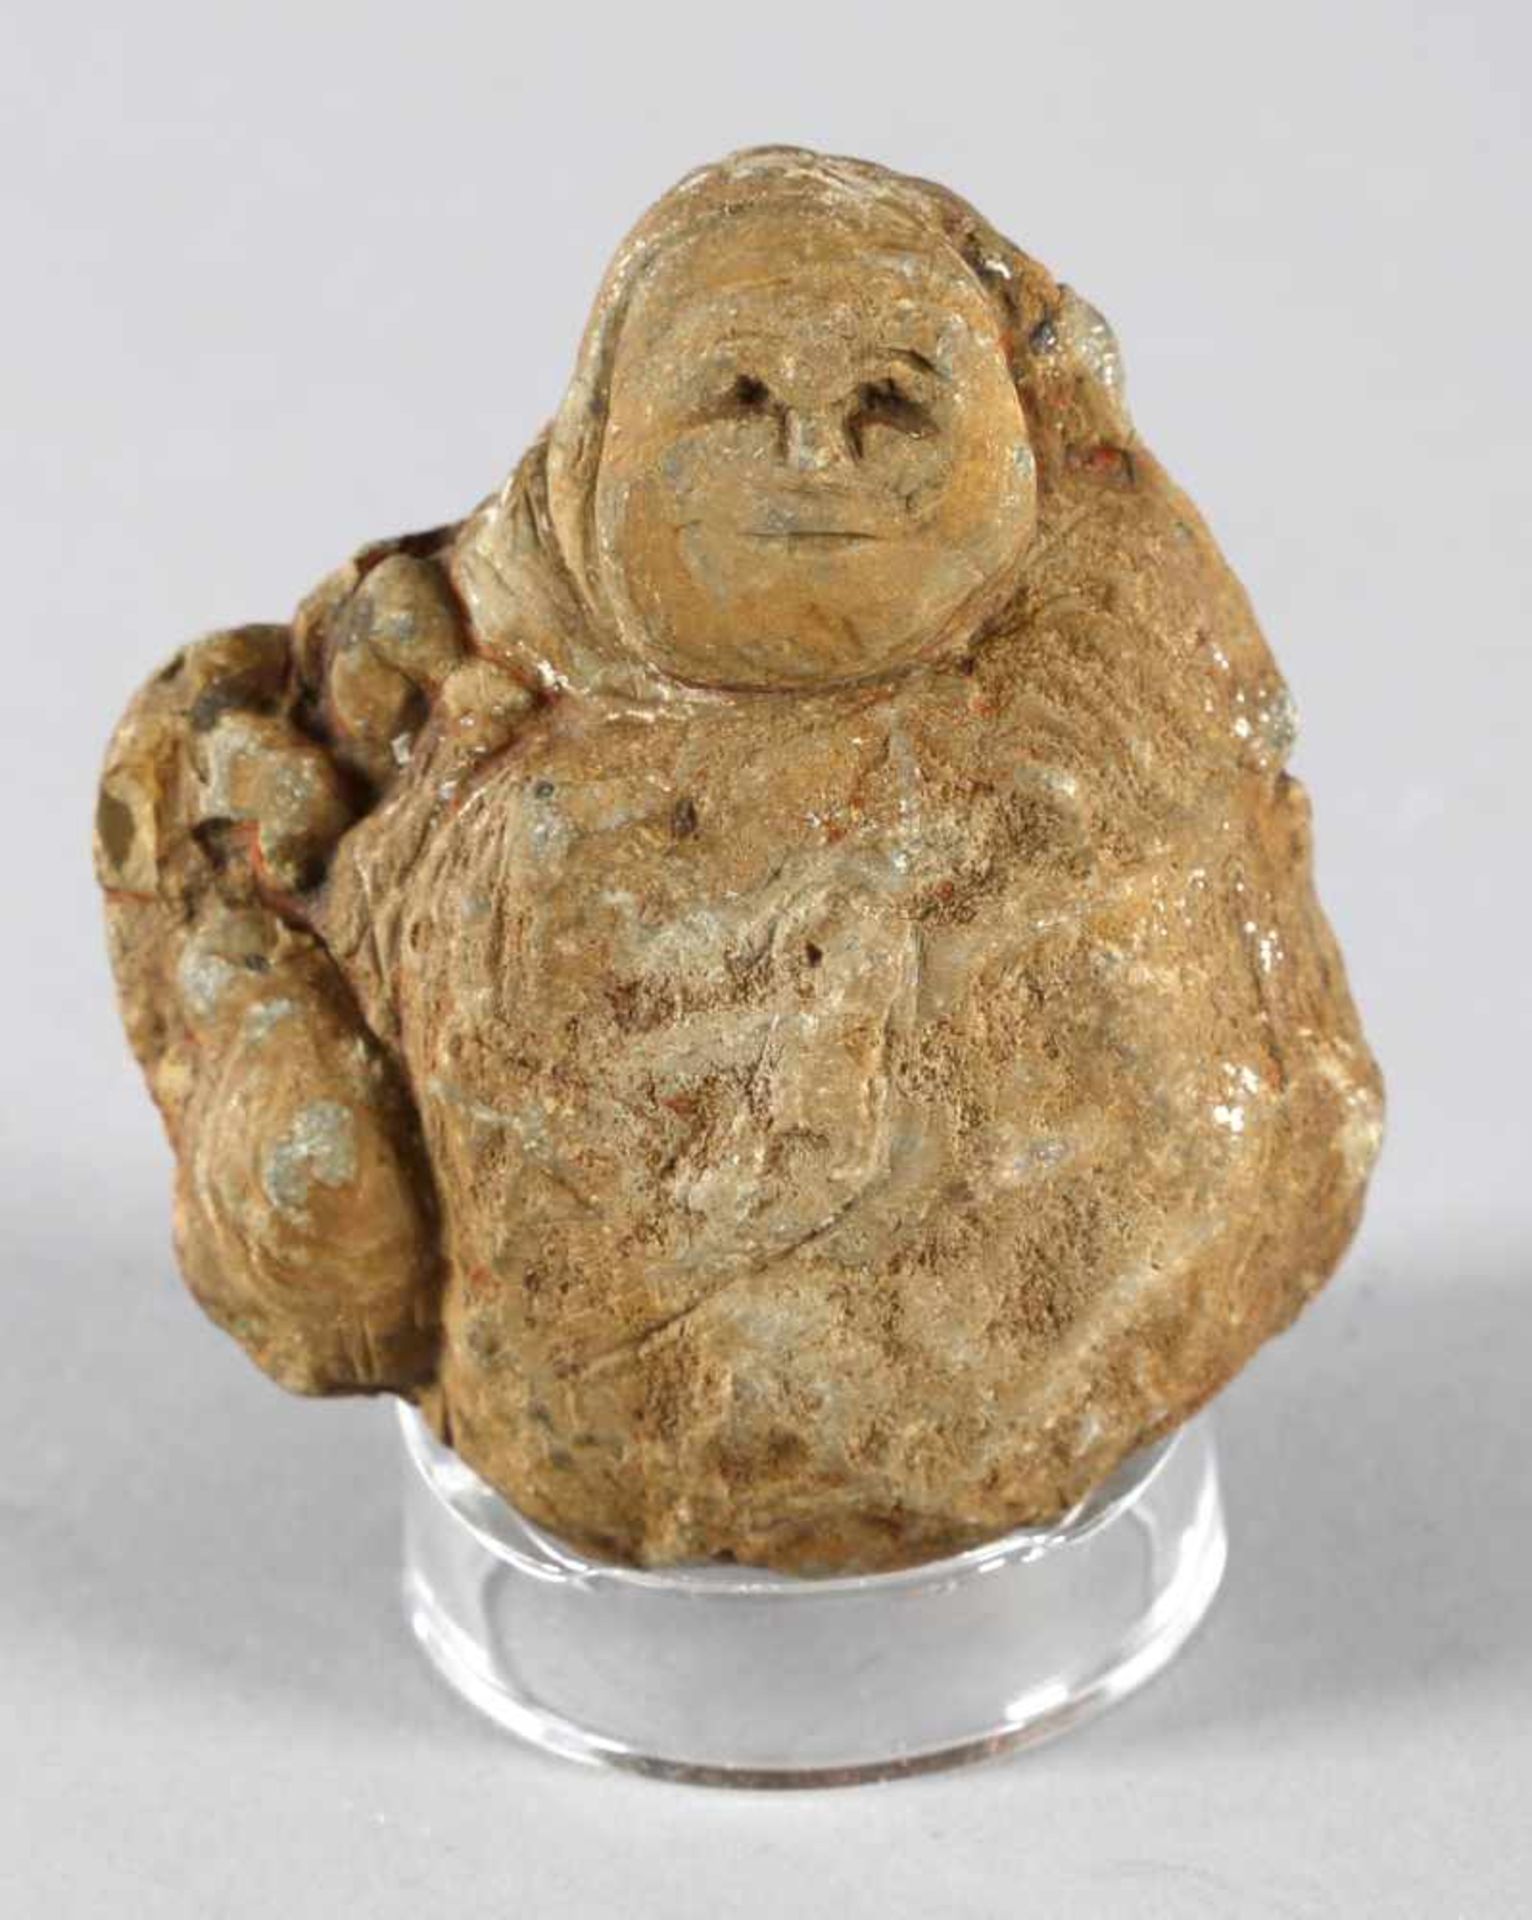 Mutterfigur, Kultur der Taino, Dominikanische Republik, ca. 1000 - 1500 n. Chr.unregelmäßiger ovaler